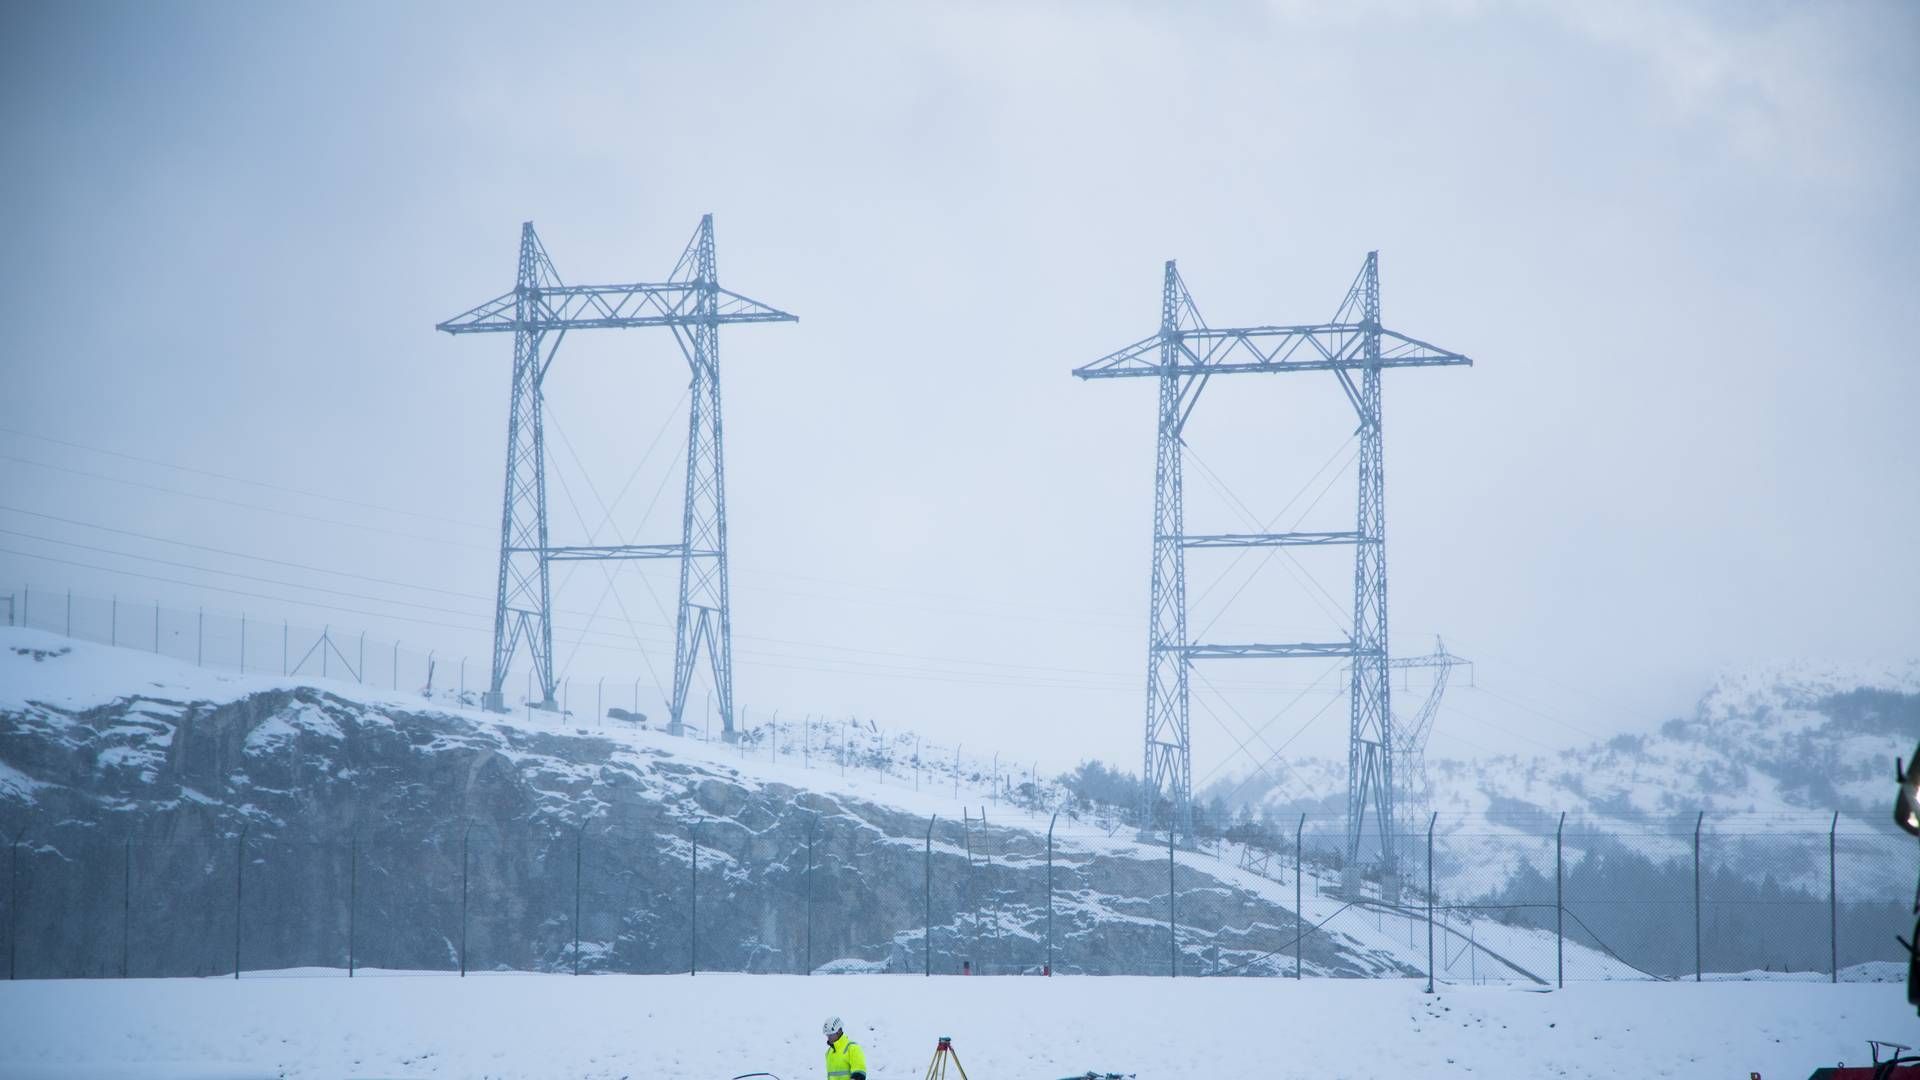 UTENLANDSKE ENTREPRENØRER: Alle de store prosjektene på 420 kV-linjene har gått til utenlandske aktører de siste 20 årene, ifølge EnergiTeknikk. | Foto: Statnett